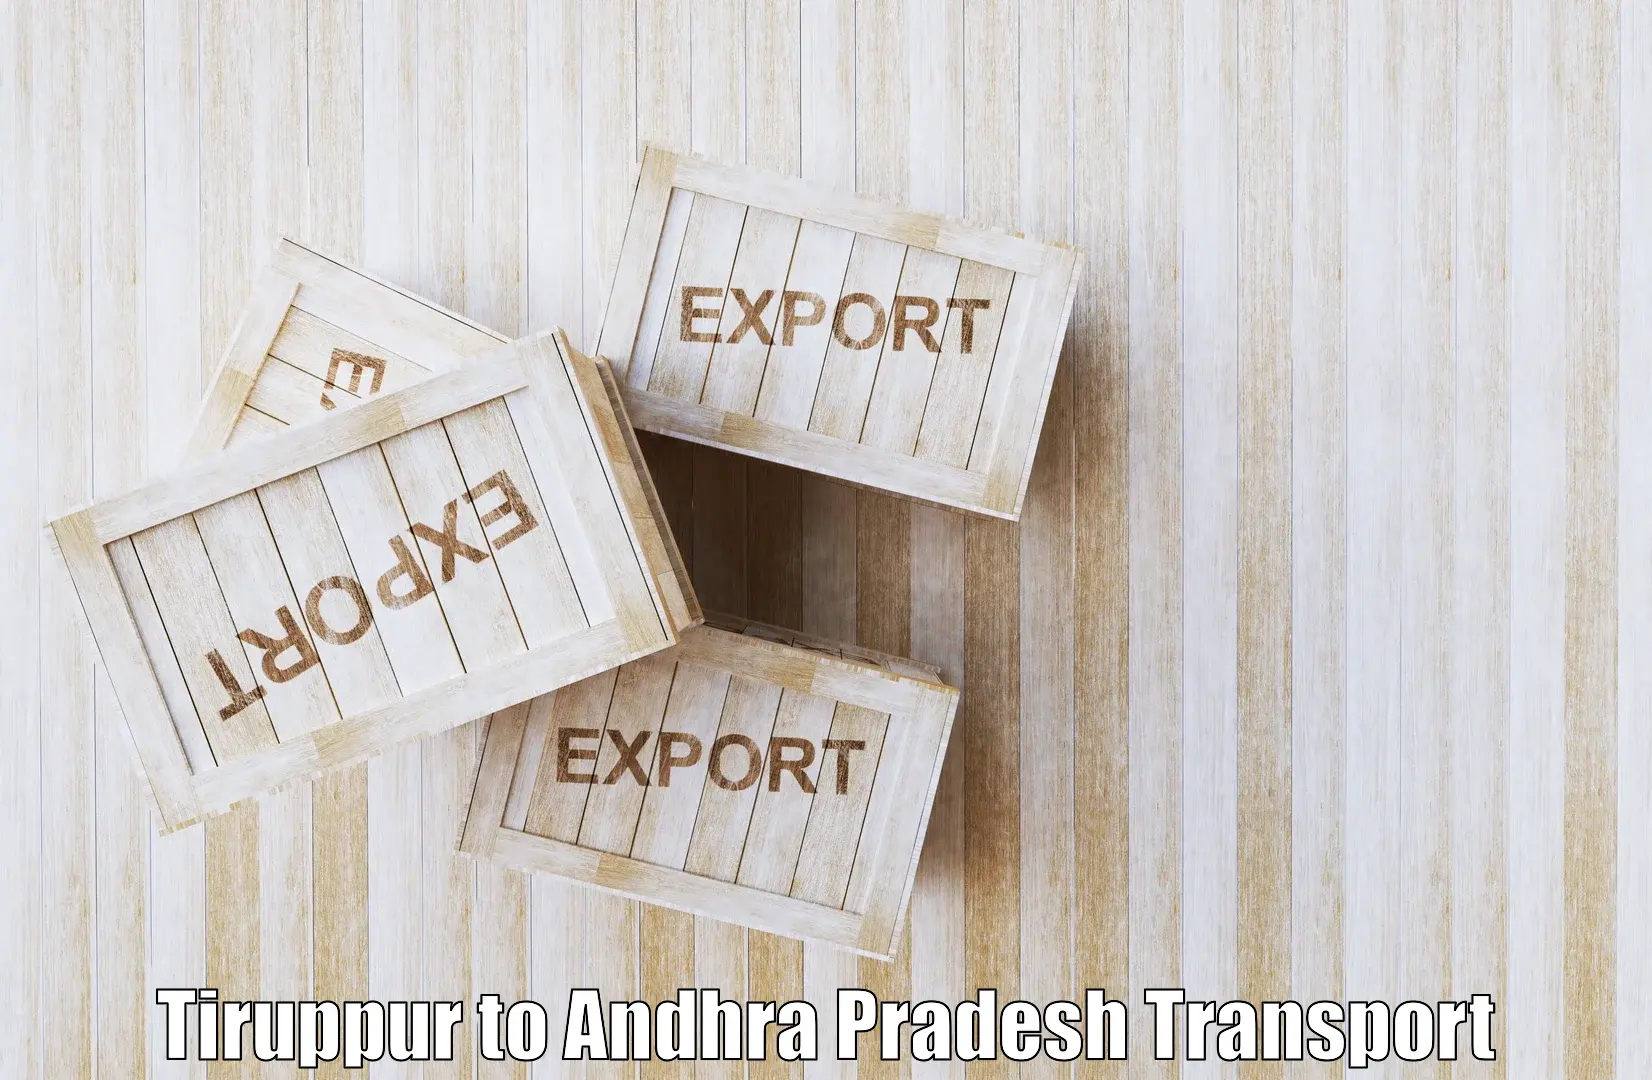 Daily transport service Tiruppur to Tanuku